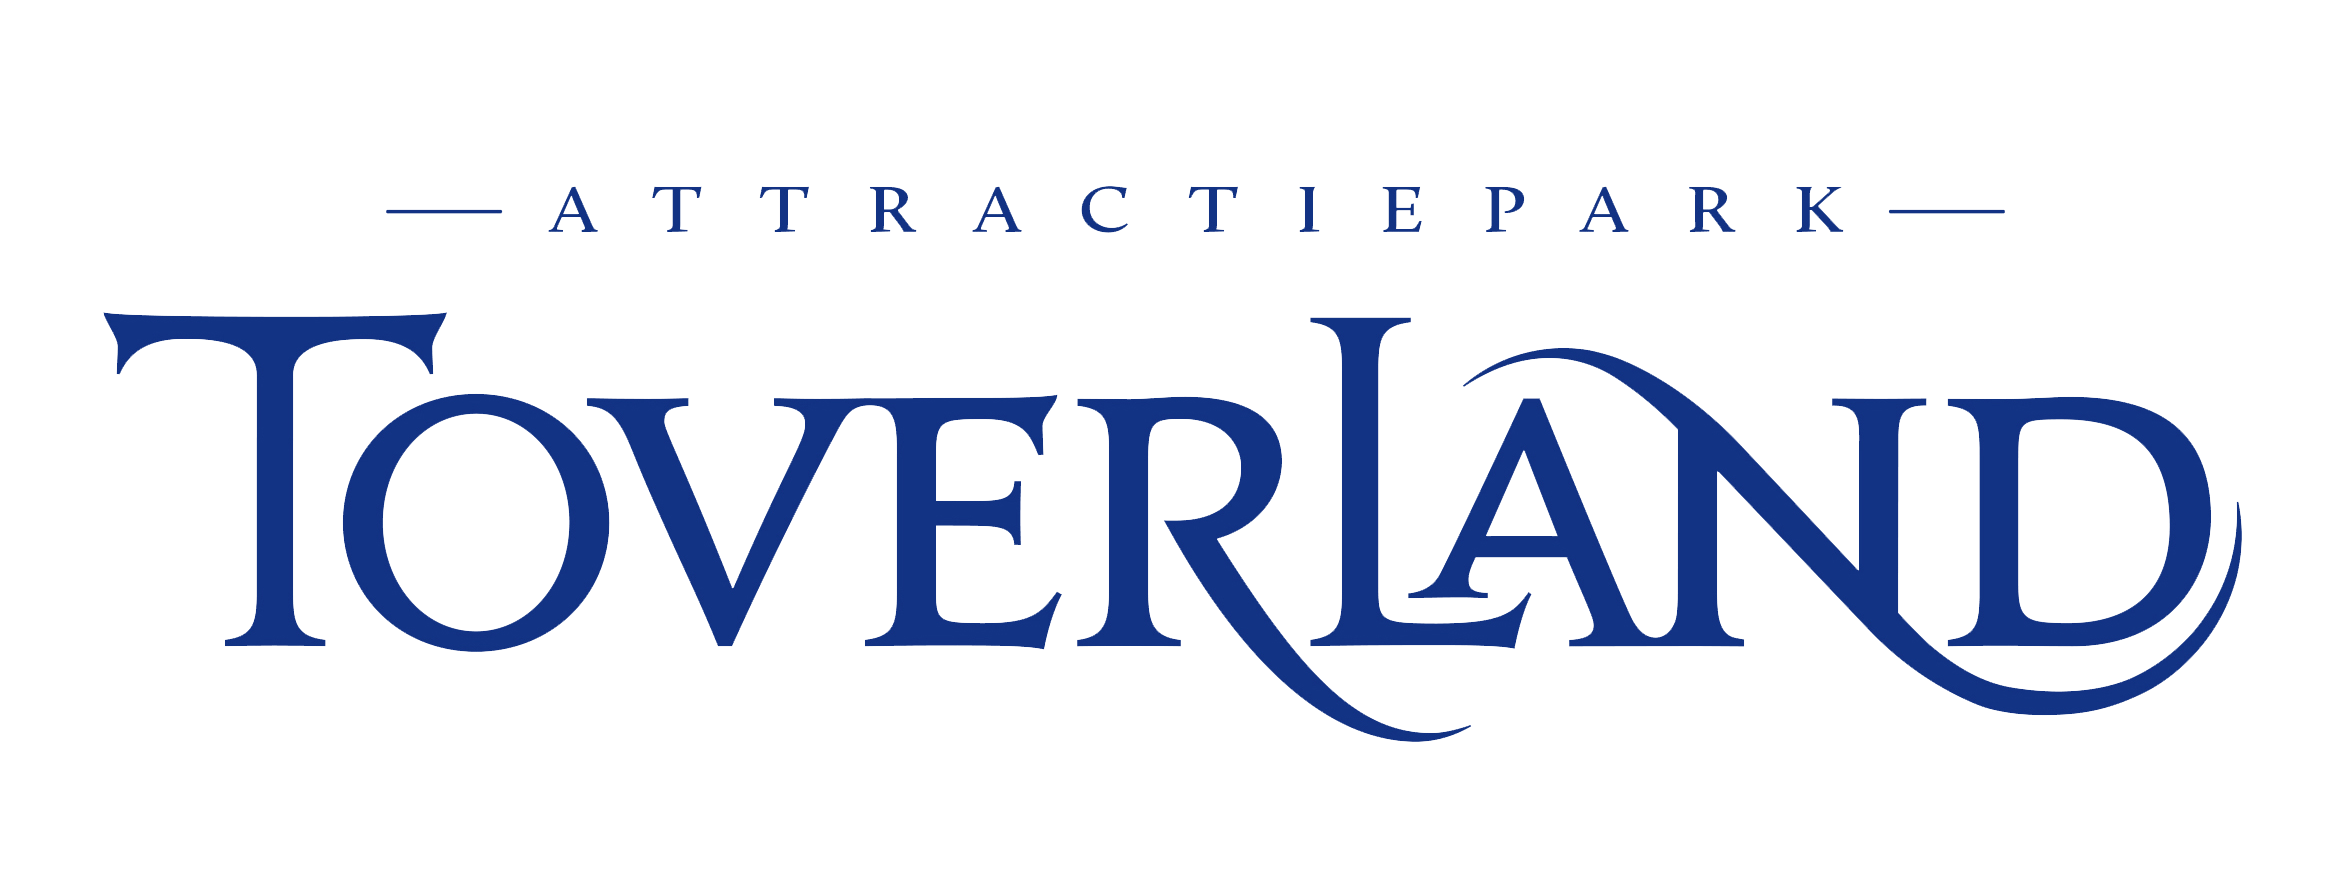 toverland_logo.png